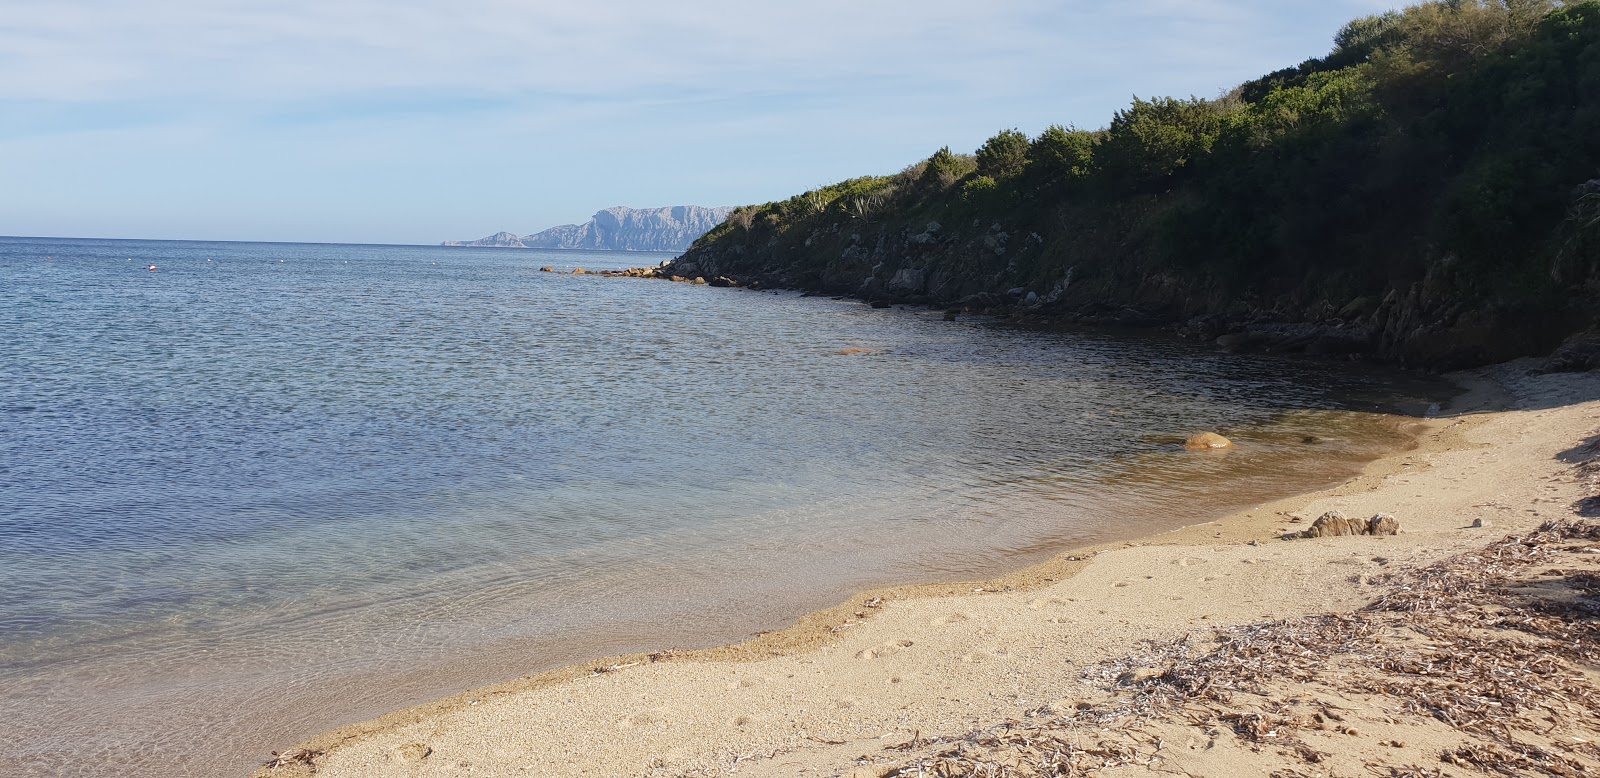 Foto av Spiaggia S'abba e sa Pedra med blå rent vatten yta